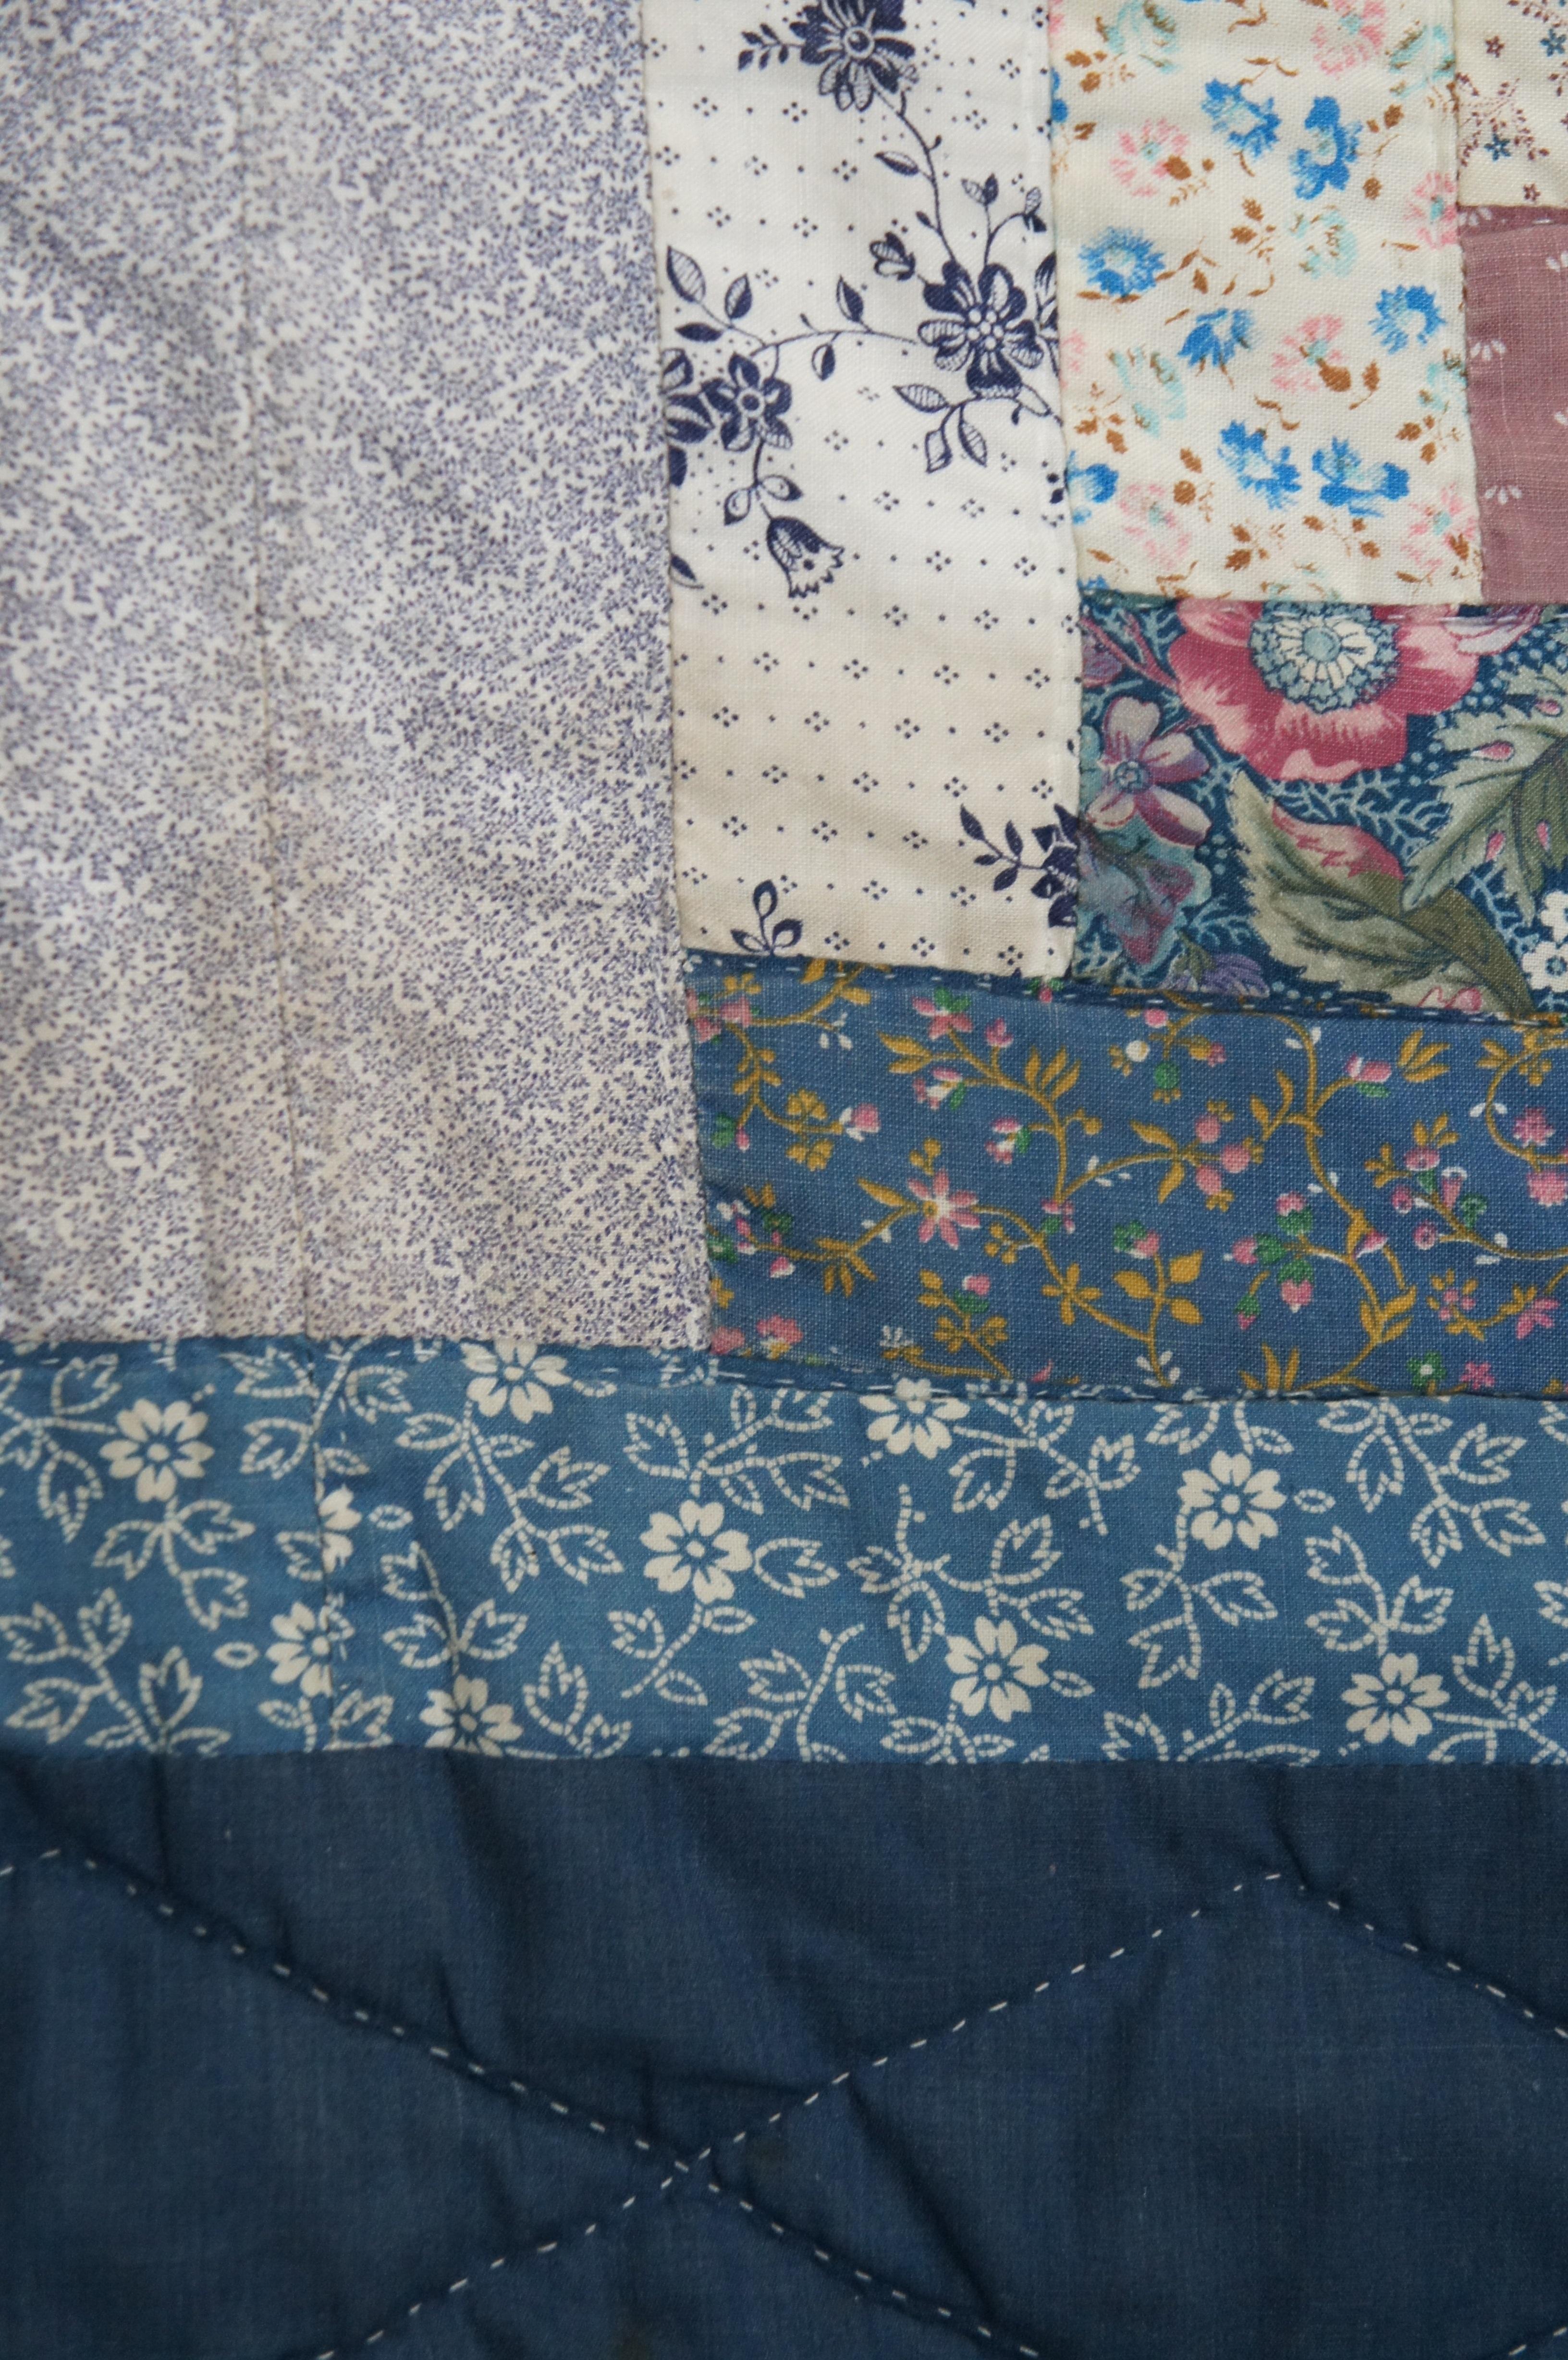 Cotton Vintage Log Cabin Stitched Geometric Floral Quilt Blanket Bedspread 94